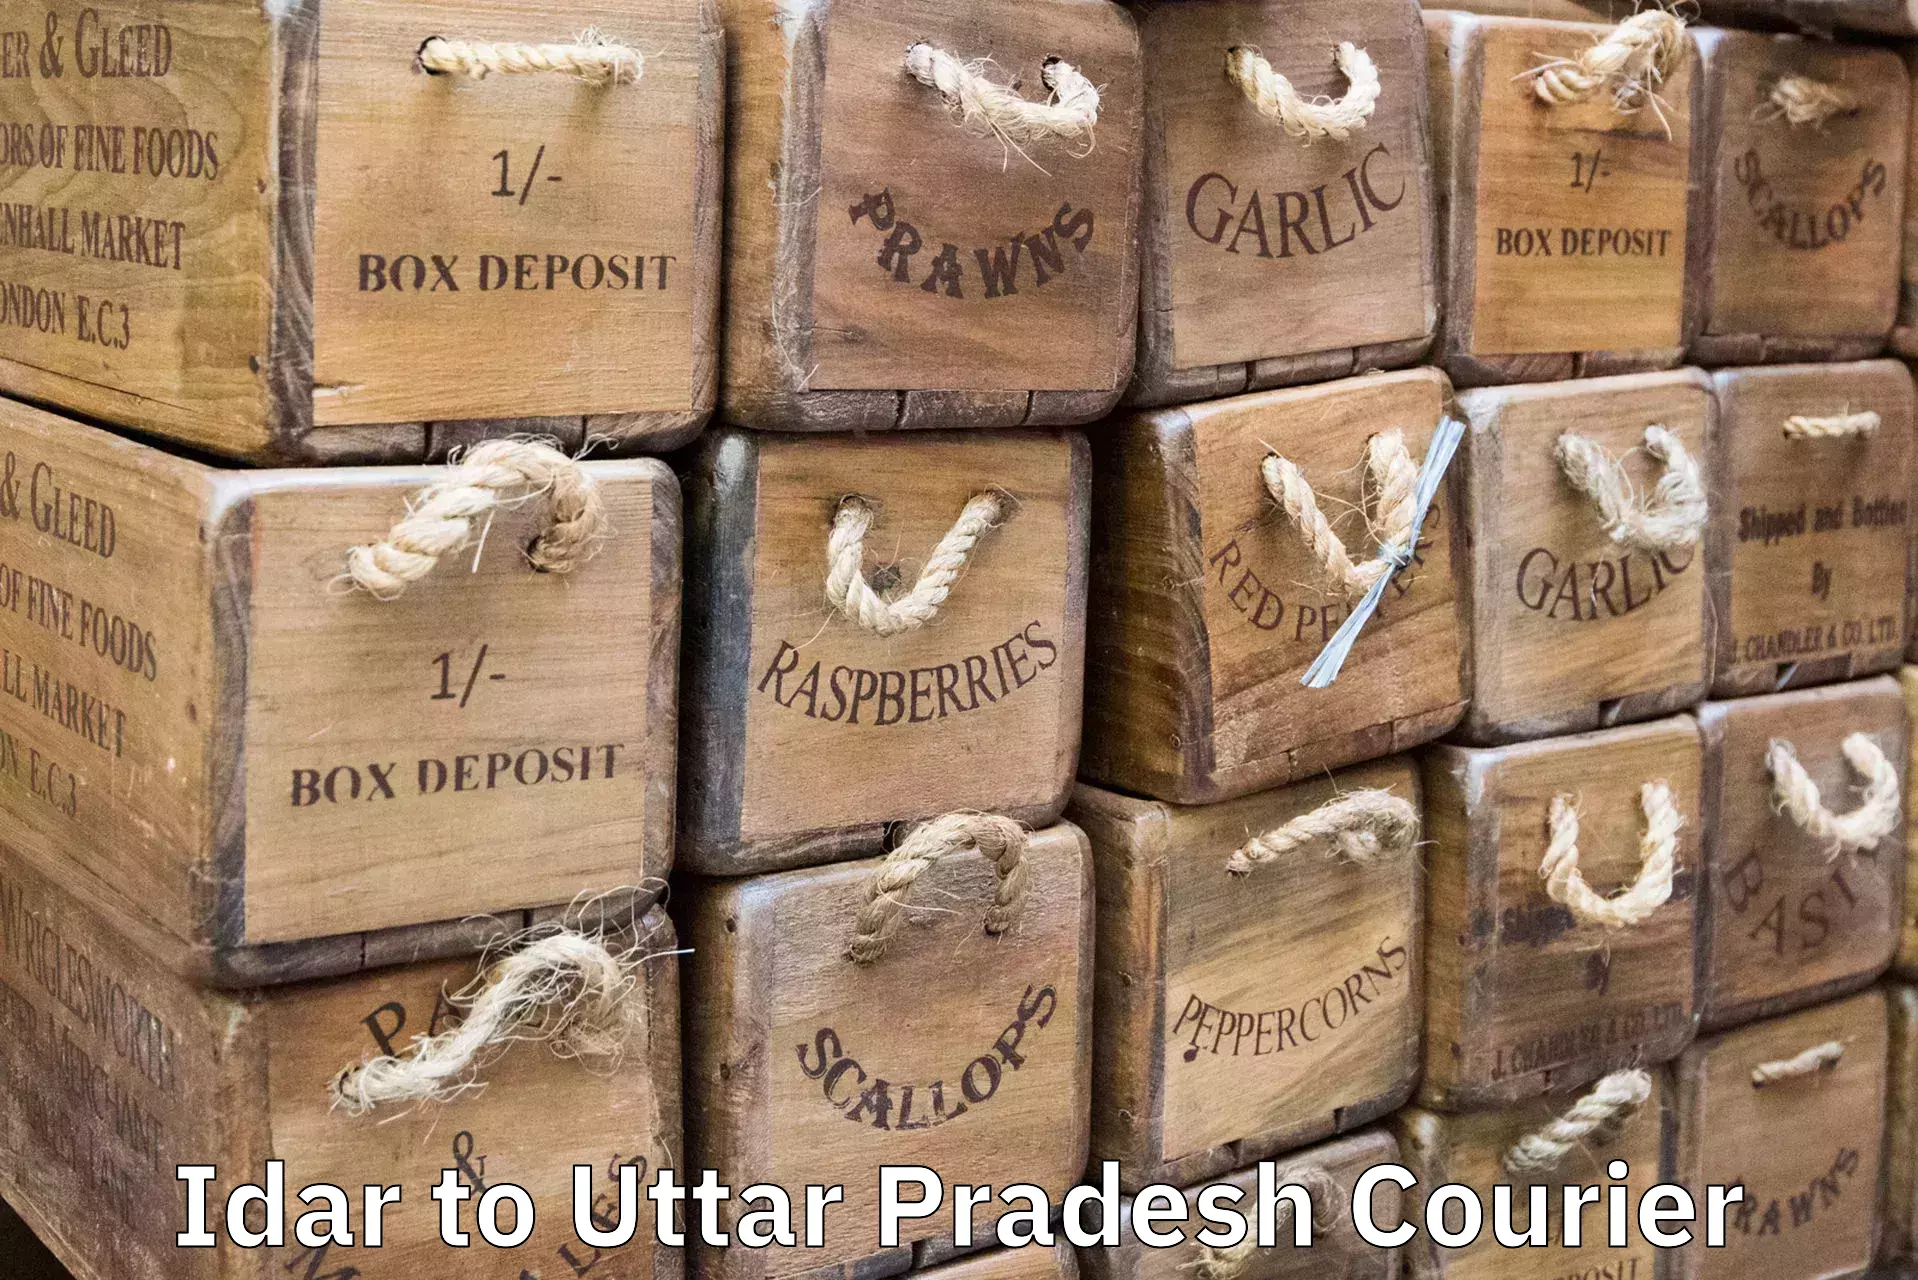 Luggage shipping estimate Idar to Banaras Hindu University Varanasi